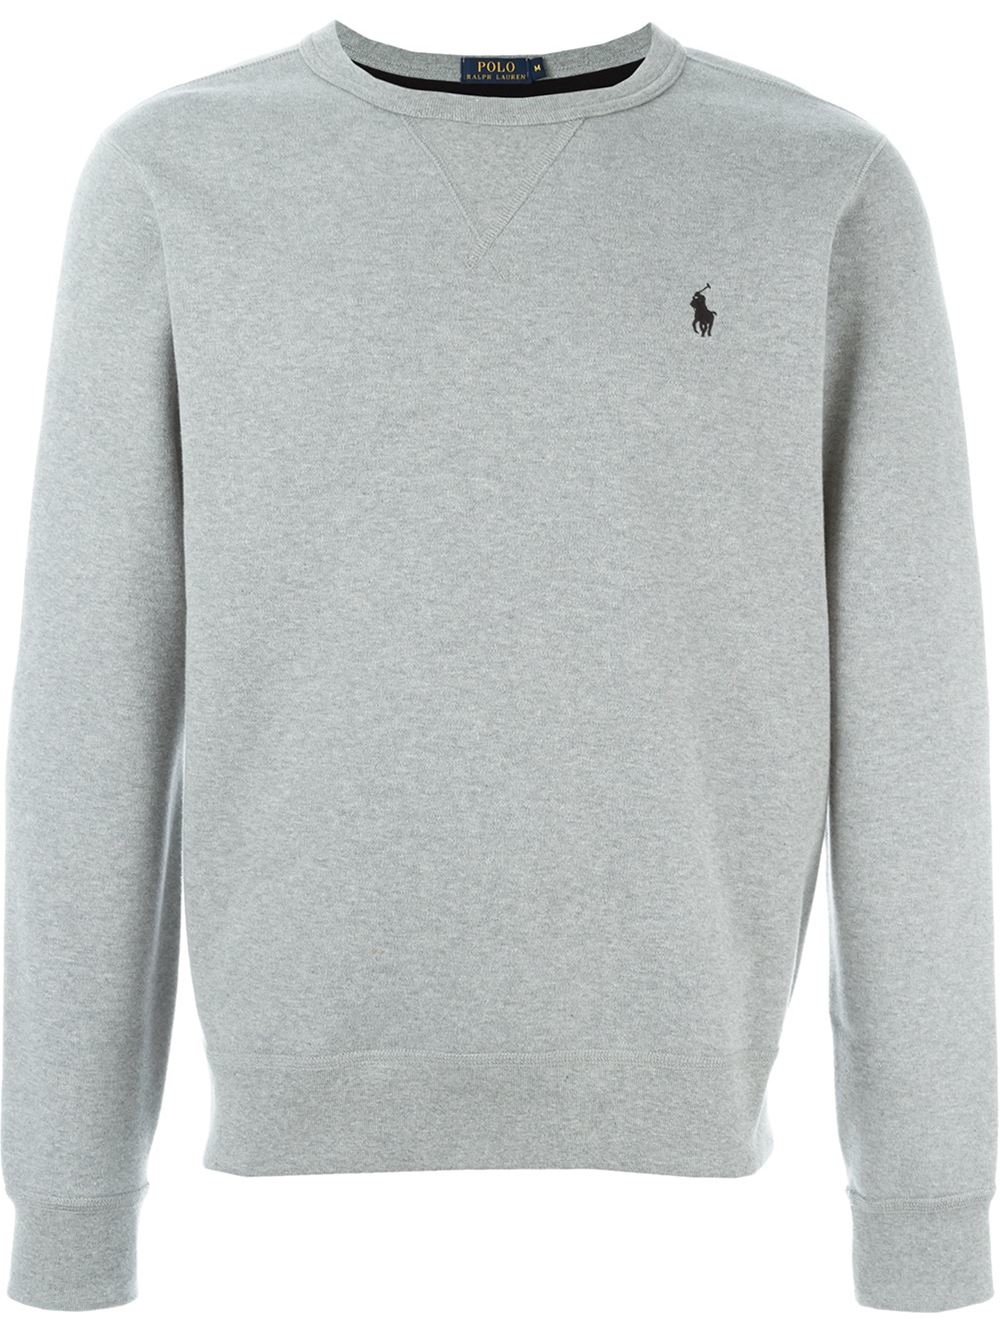 Polo Ralph Lauren Crew Neck Sweatshirt in Gray for Men - Lyst